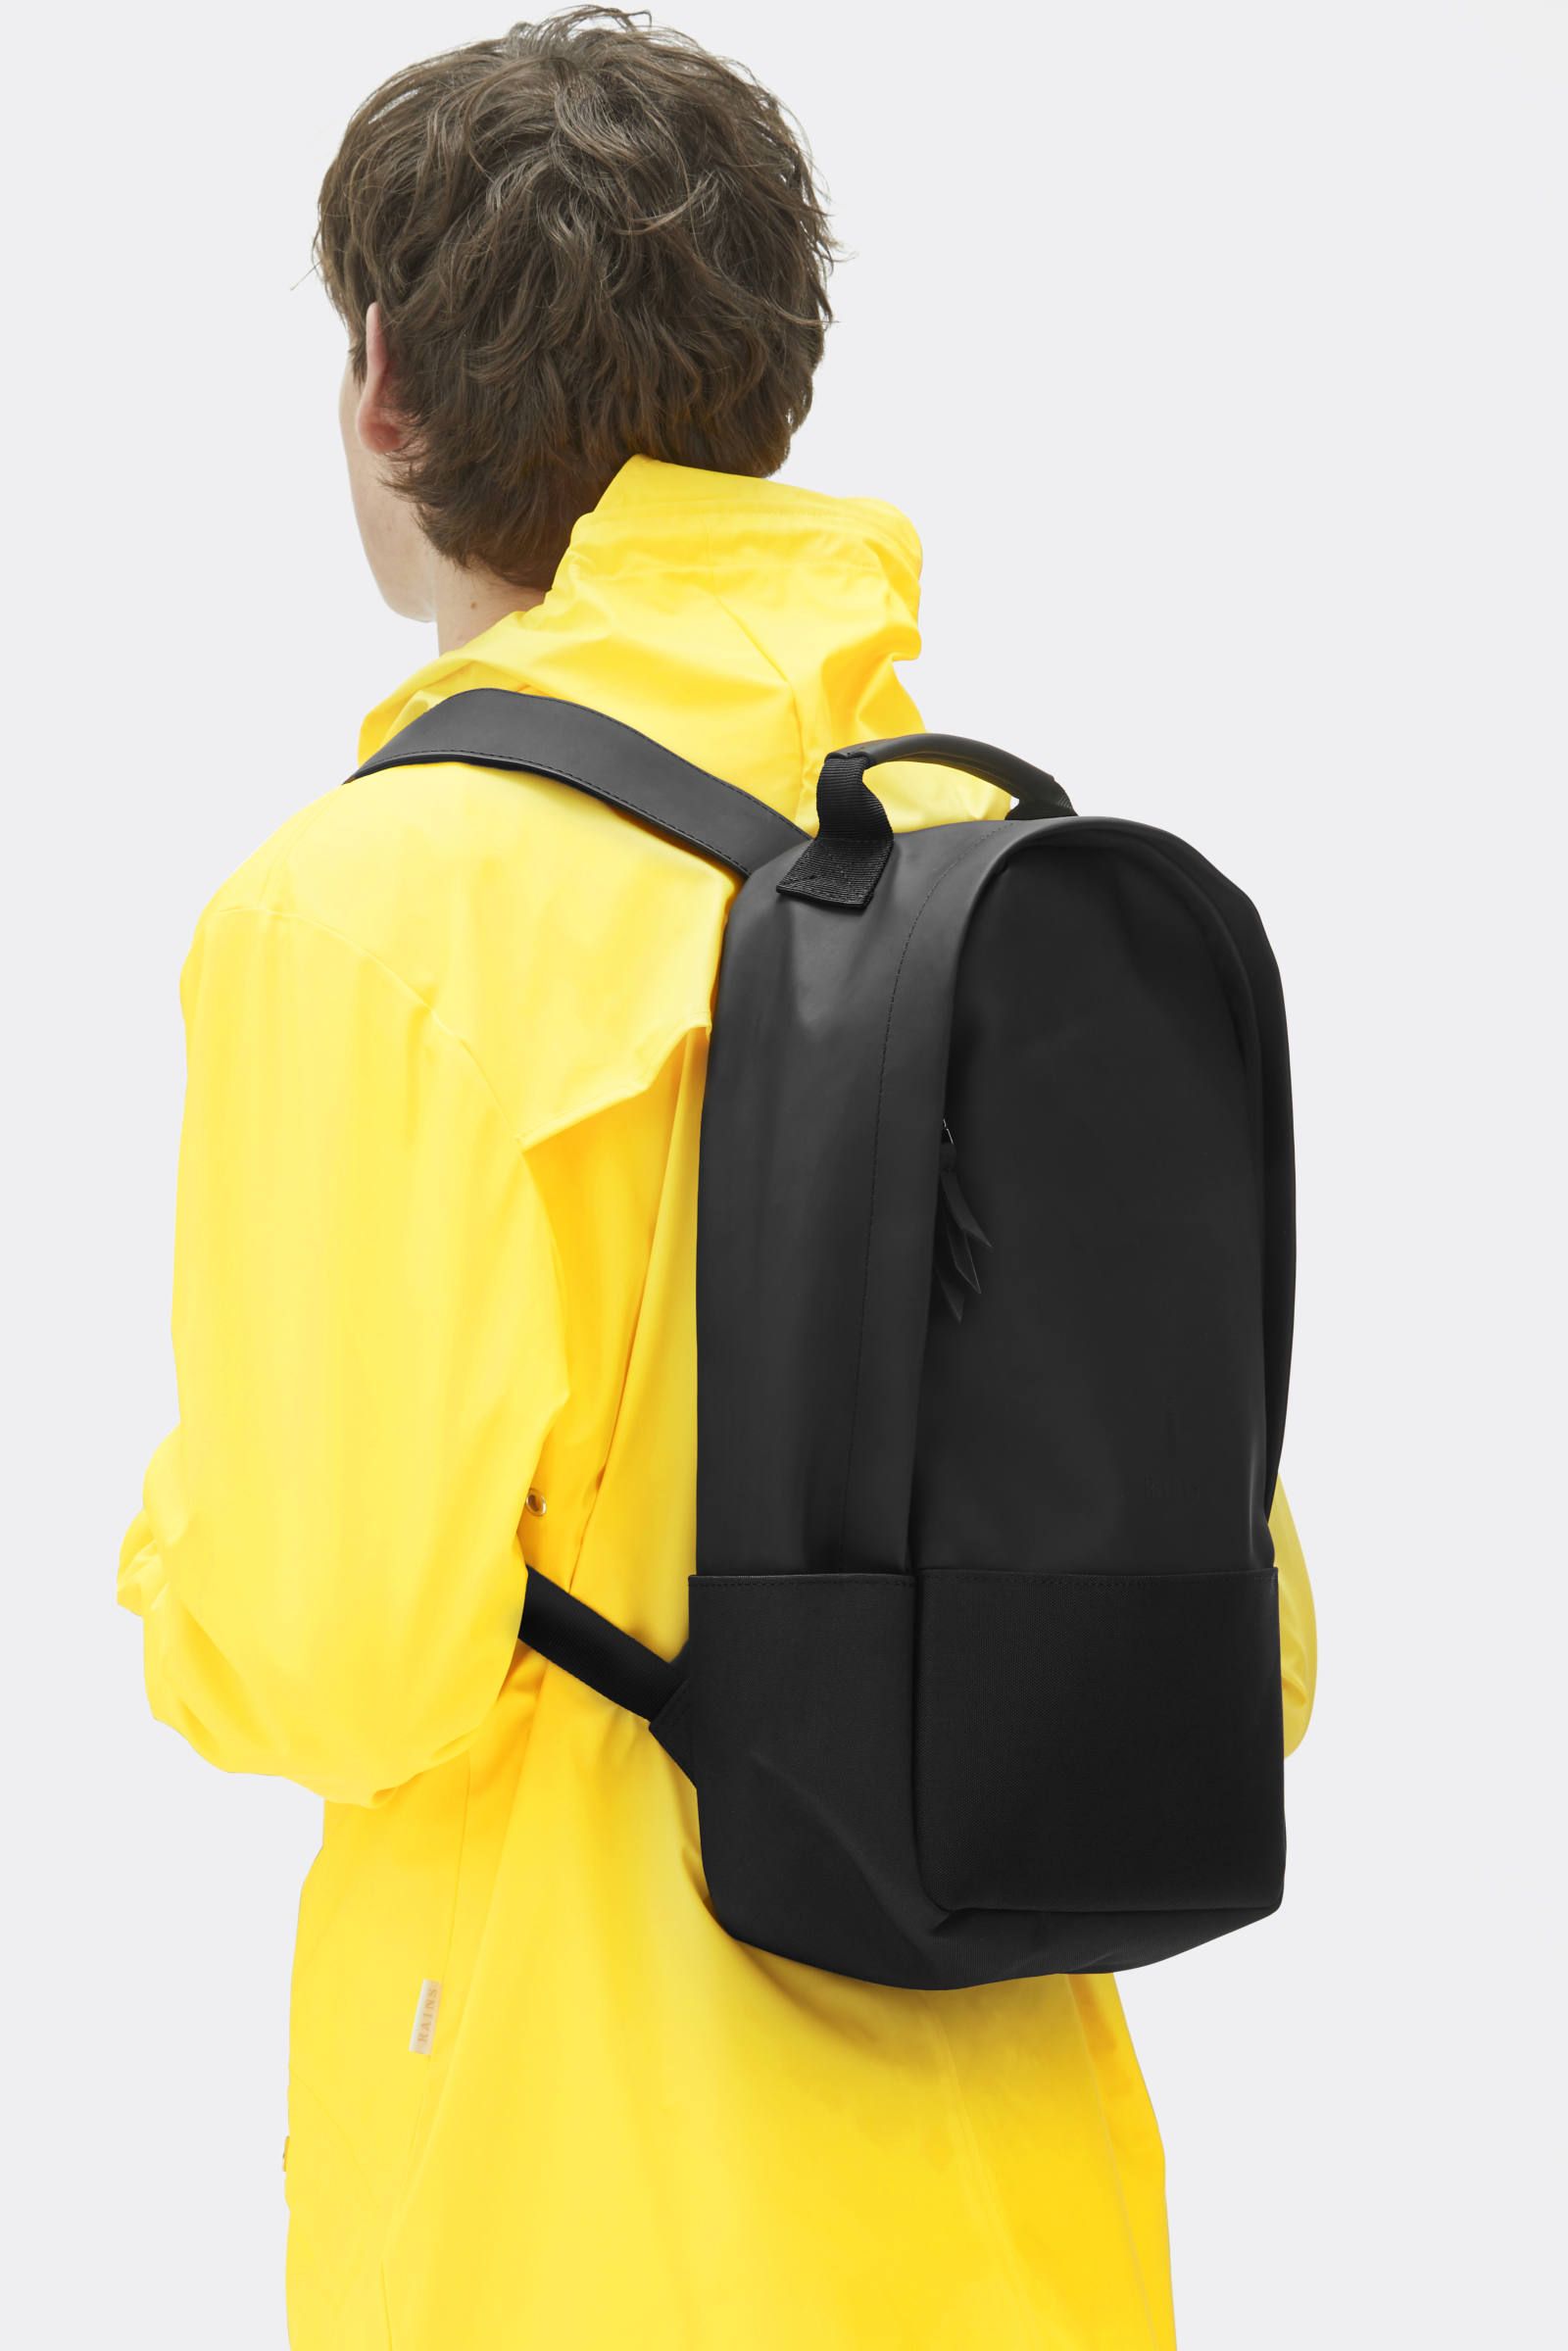 City Backpack (black)